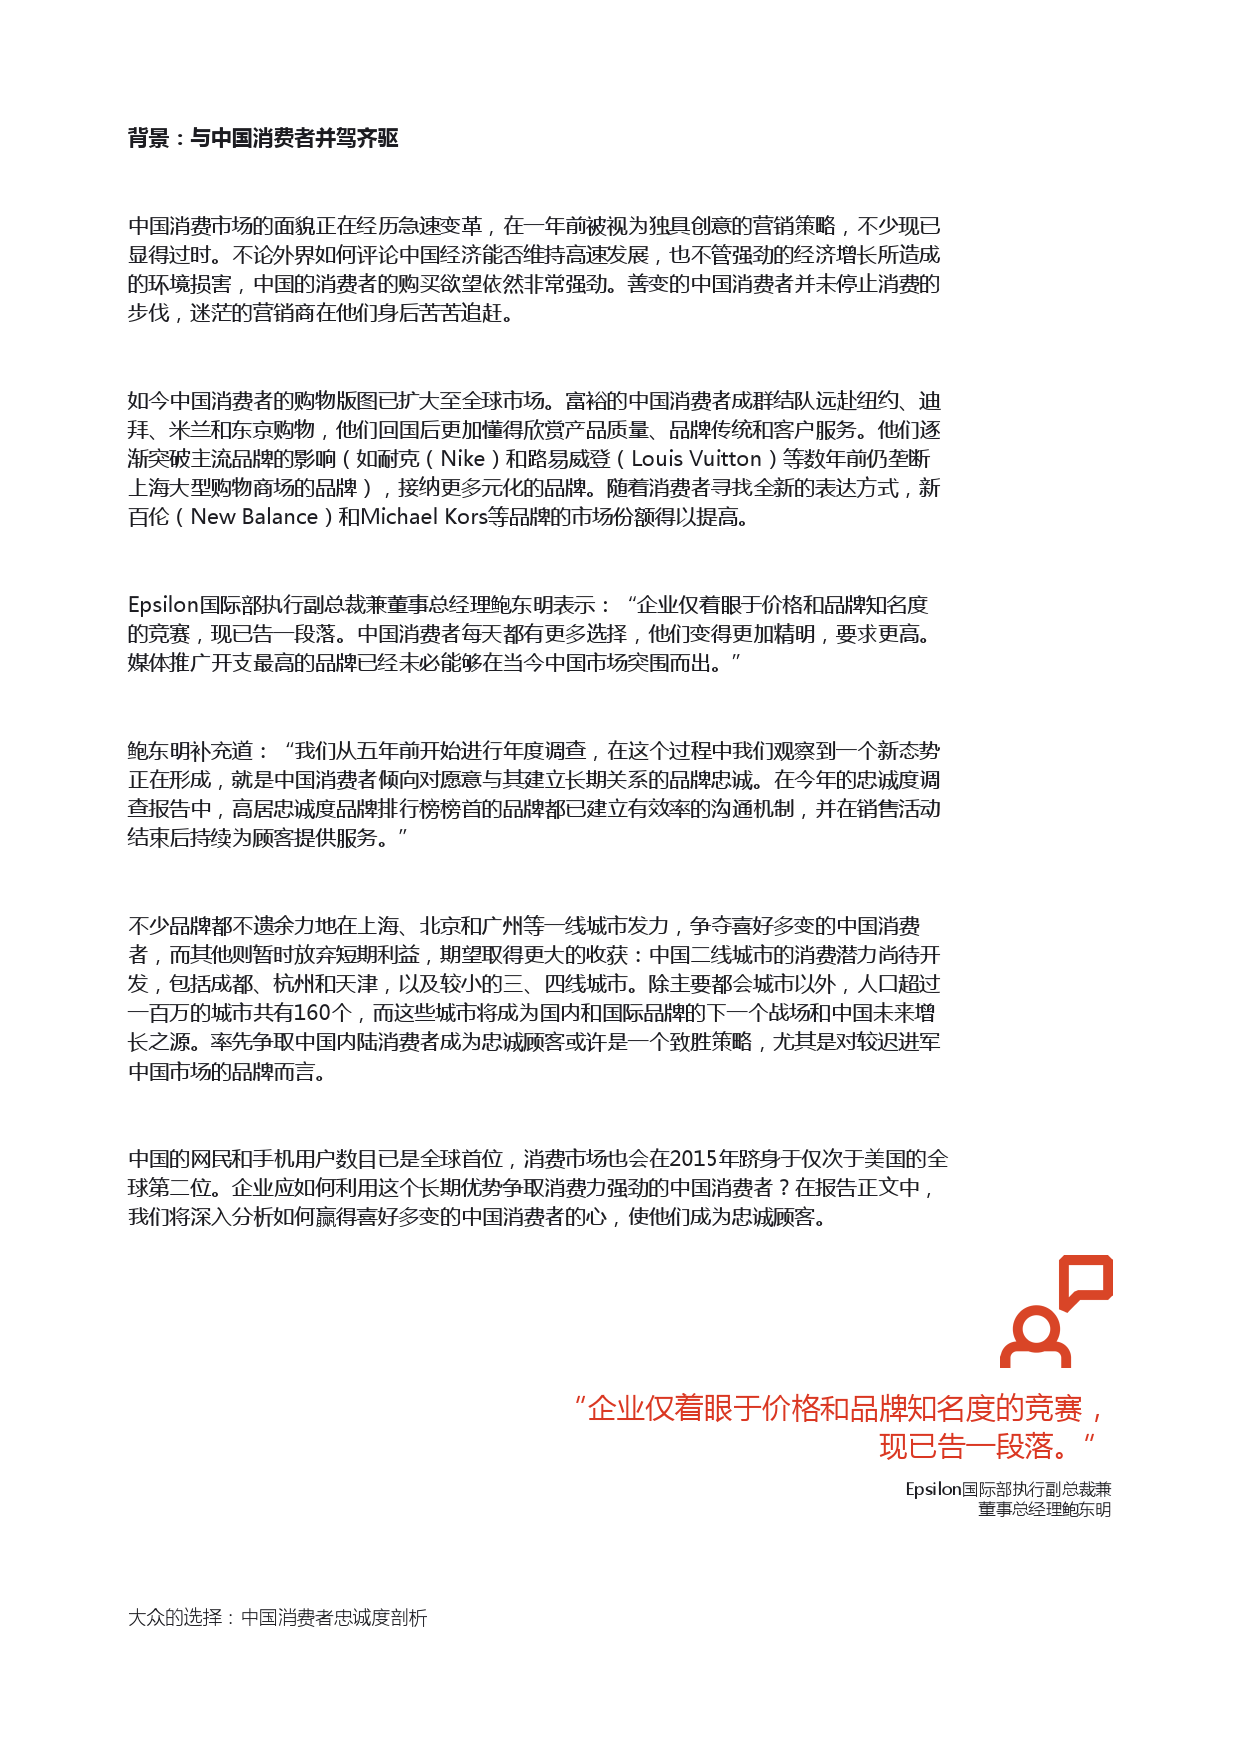 Epsilon_China_Loyalty_Study_report_CN_000004